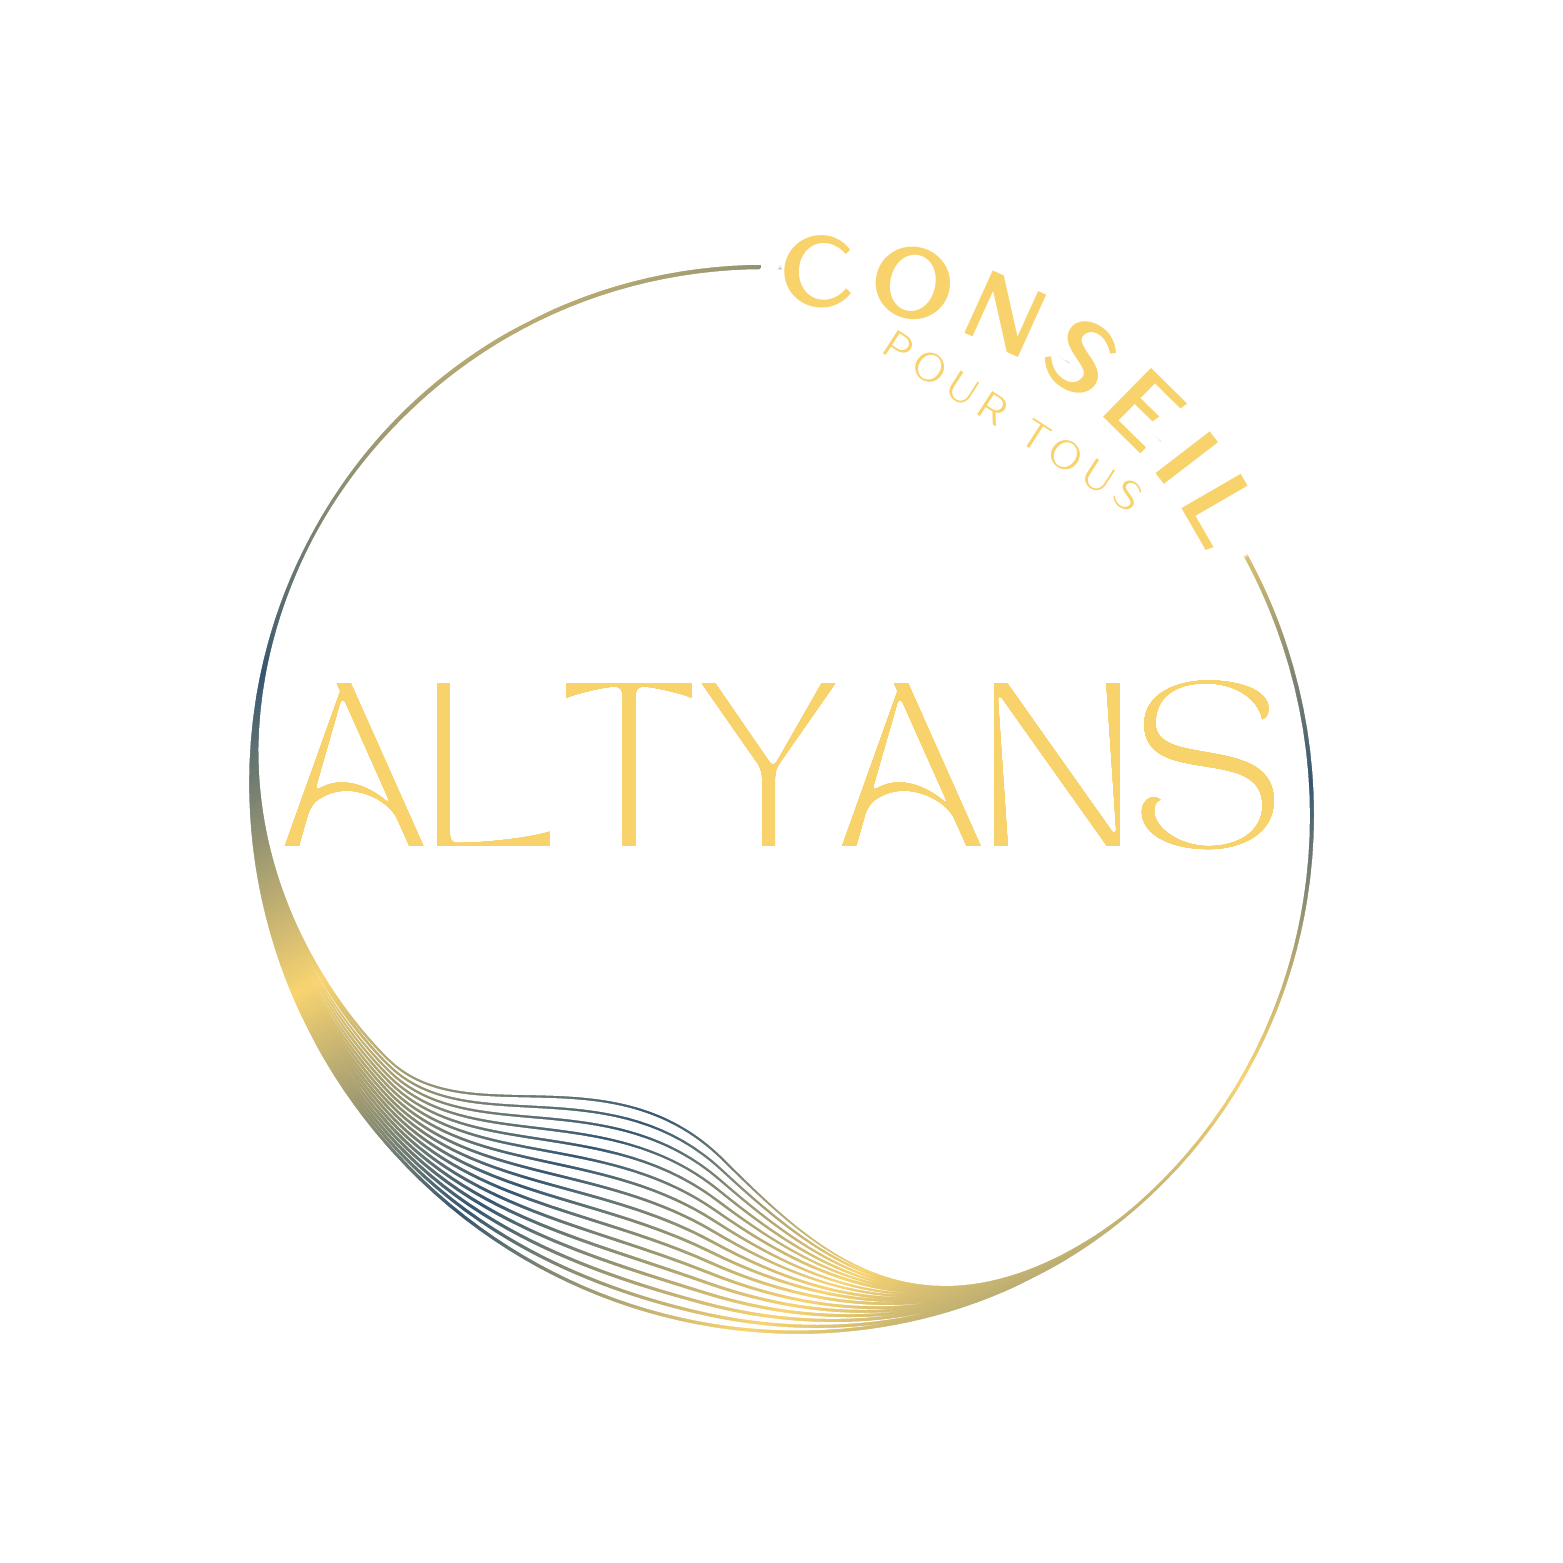 Altyans, le conseil pour tous